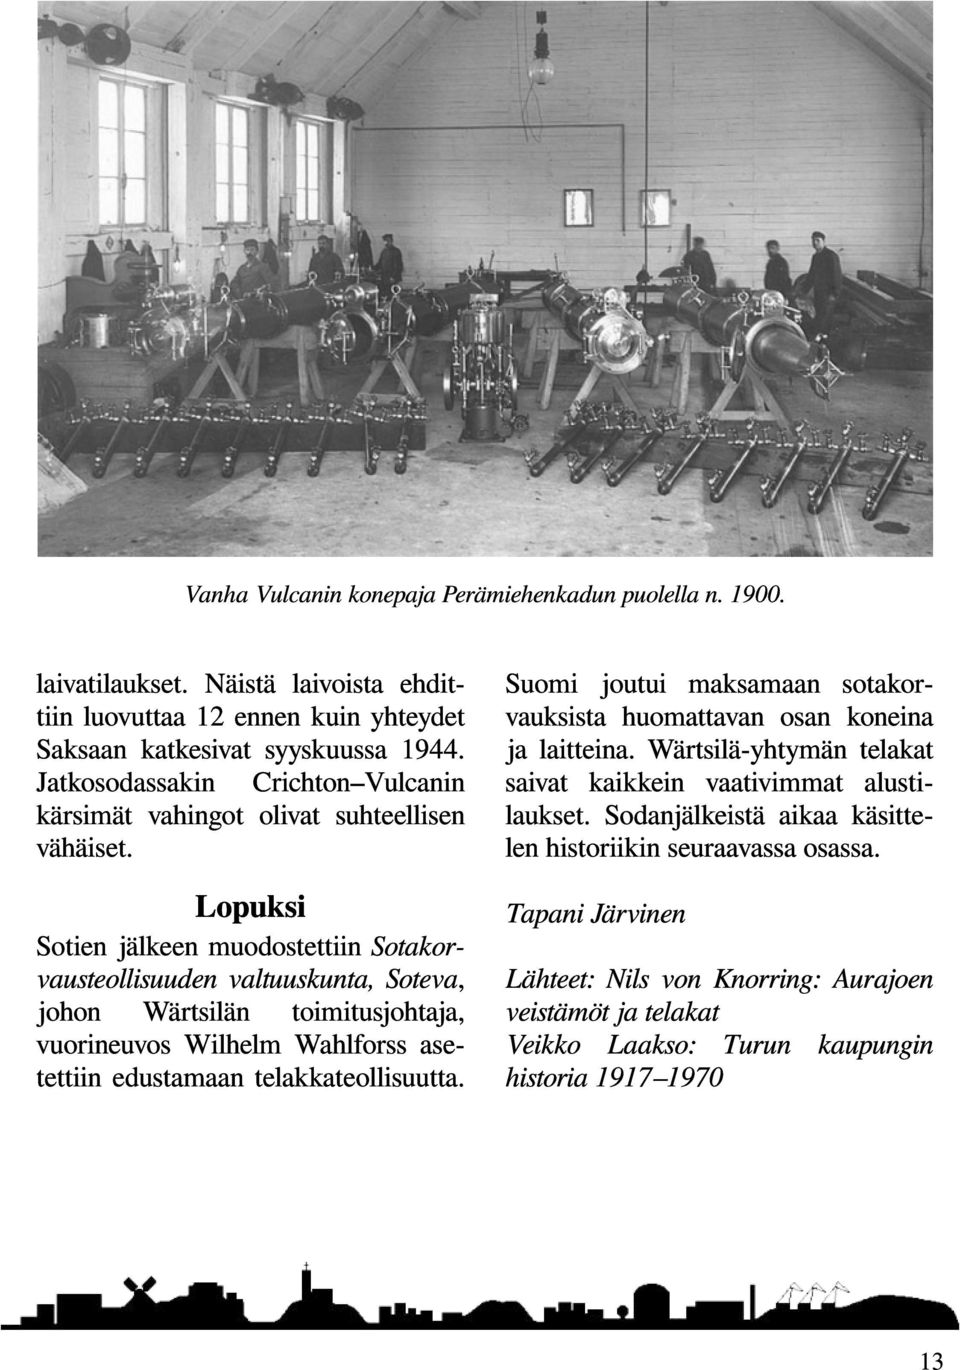 Lopuksi Sotien jälkeen muodostettiin Sotakorvausteollisuuden valtuuskunta, Soteva, johon Wärtsilän toimitusjohtaja, vuorineuvos Wilhelm Wahlforss asetettiin edustamaan telakkateollisuutta.